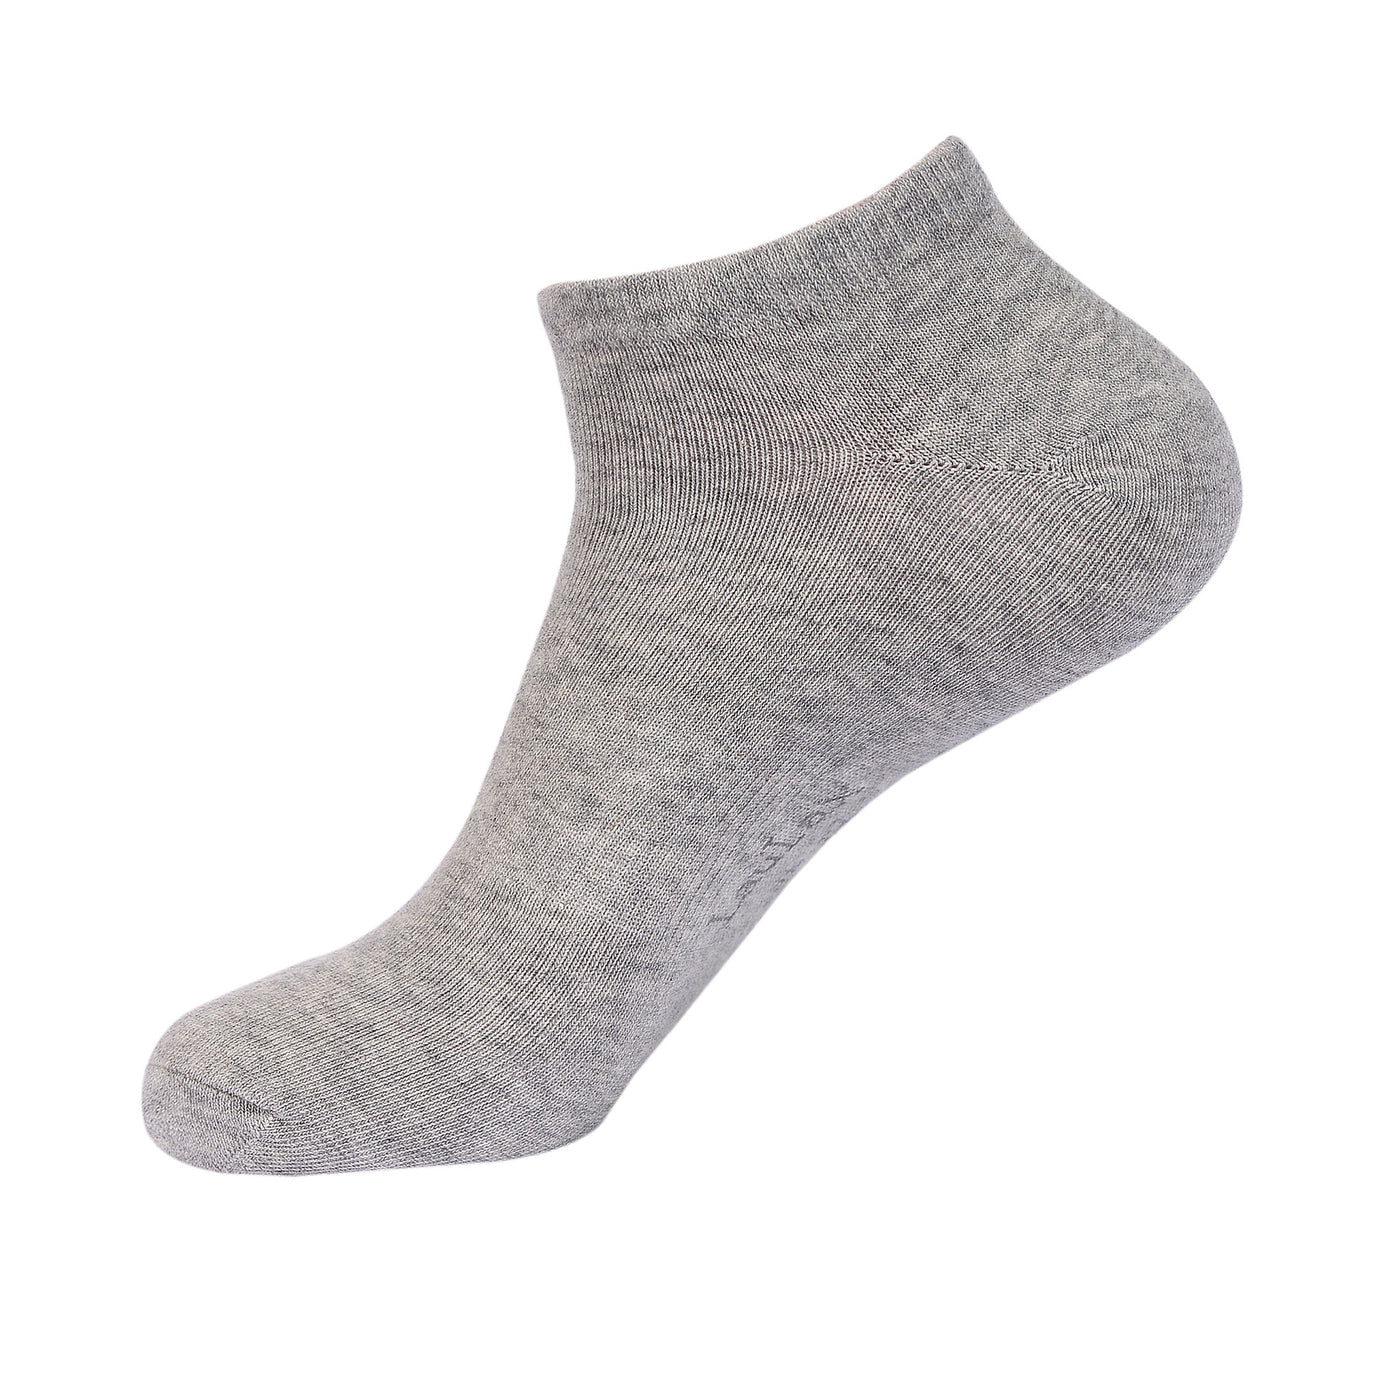 Laulax 6 pares de calcetines deportivos con soporte para el arco del mejor algodón peinado, gris, talla UK 12 - 14 / Europ 47 - 49